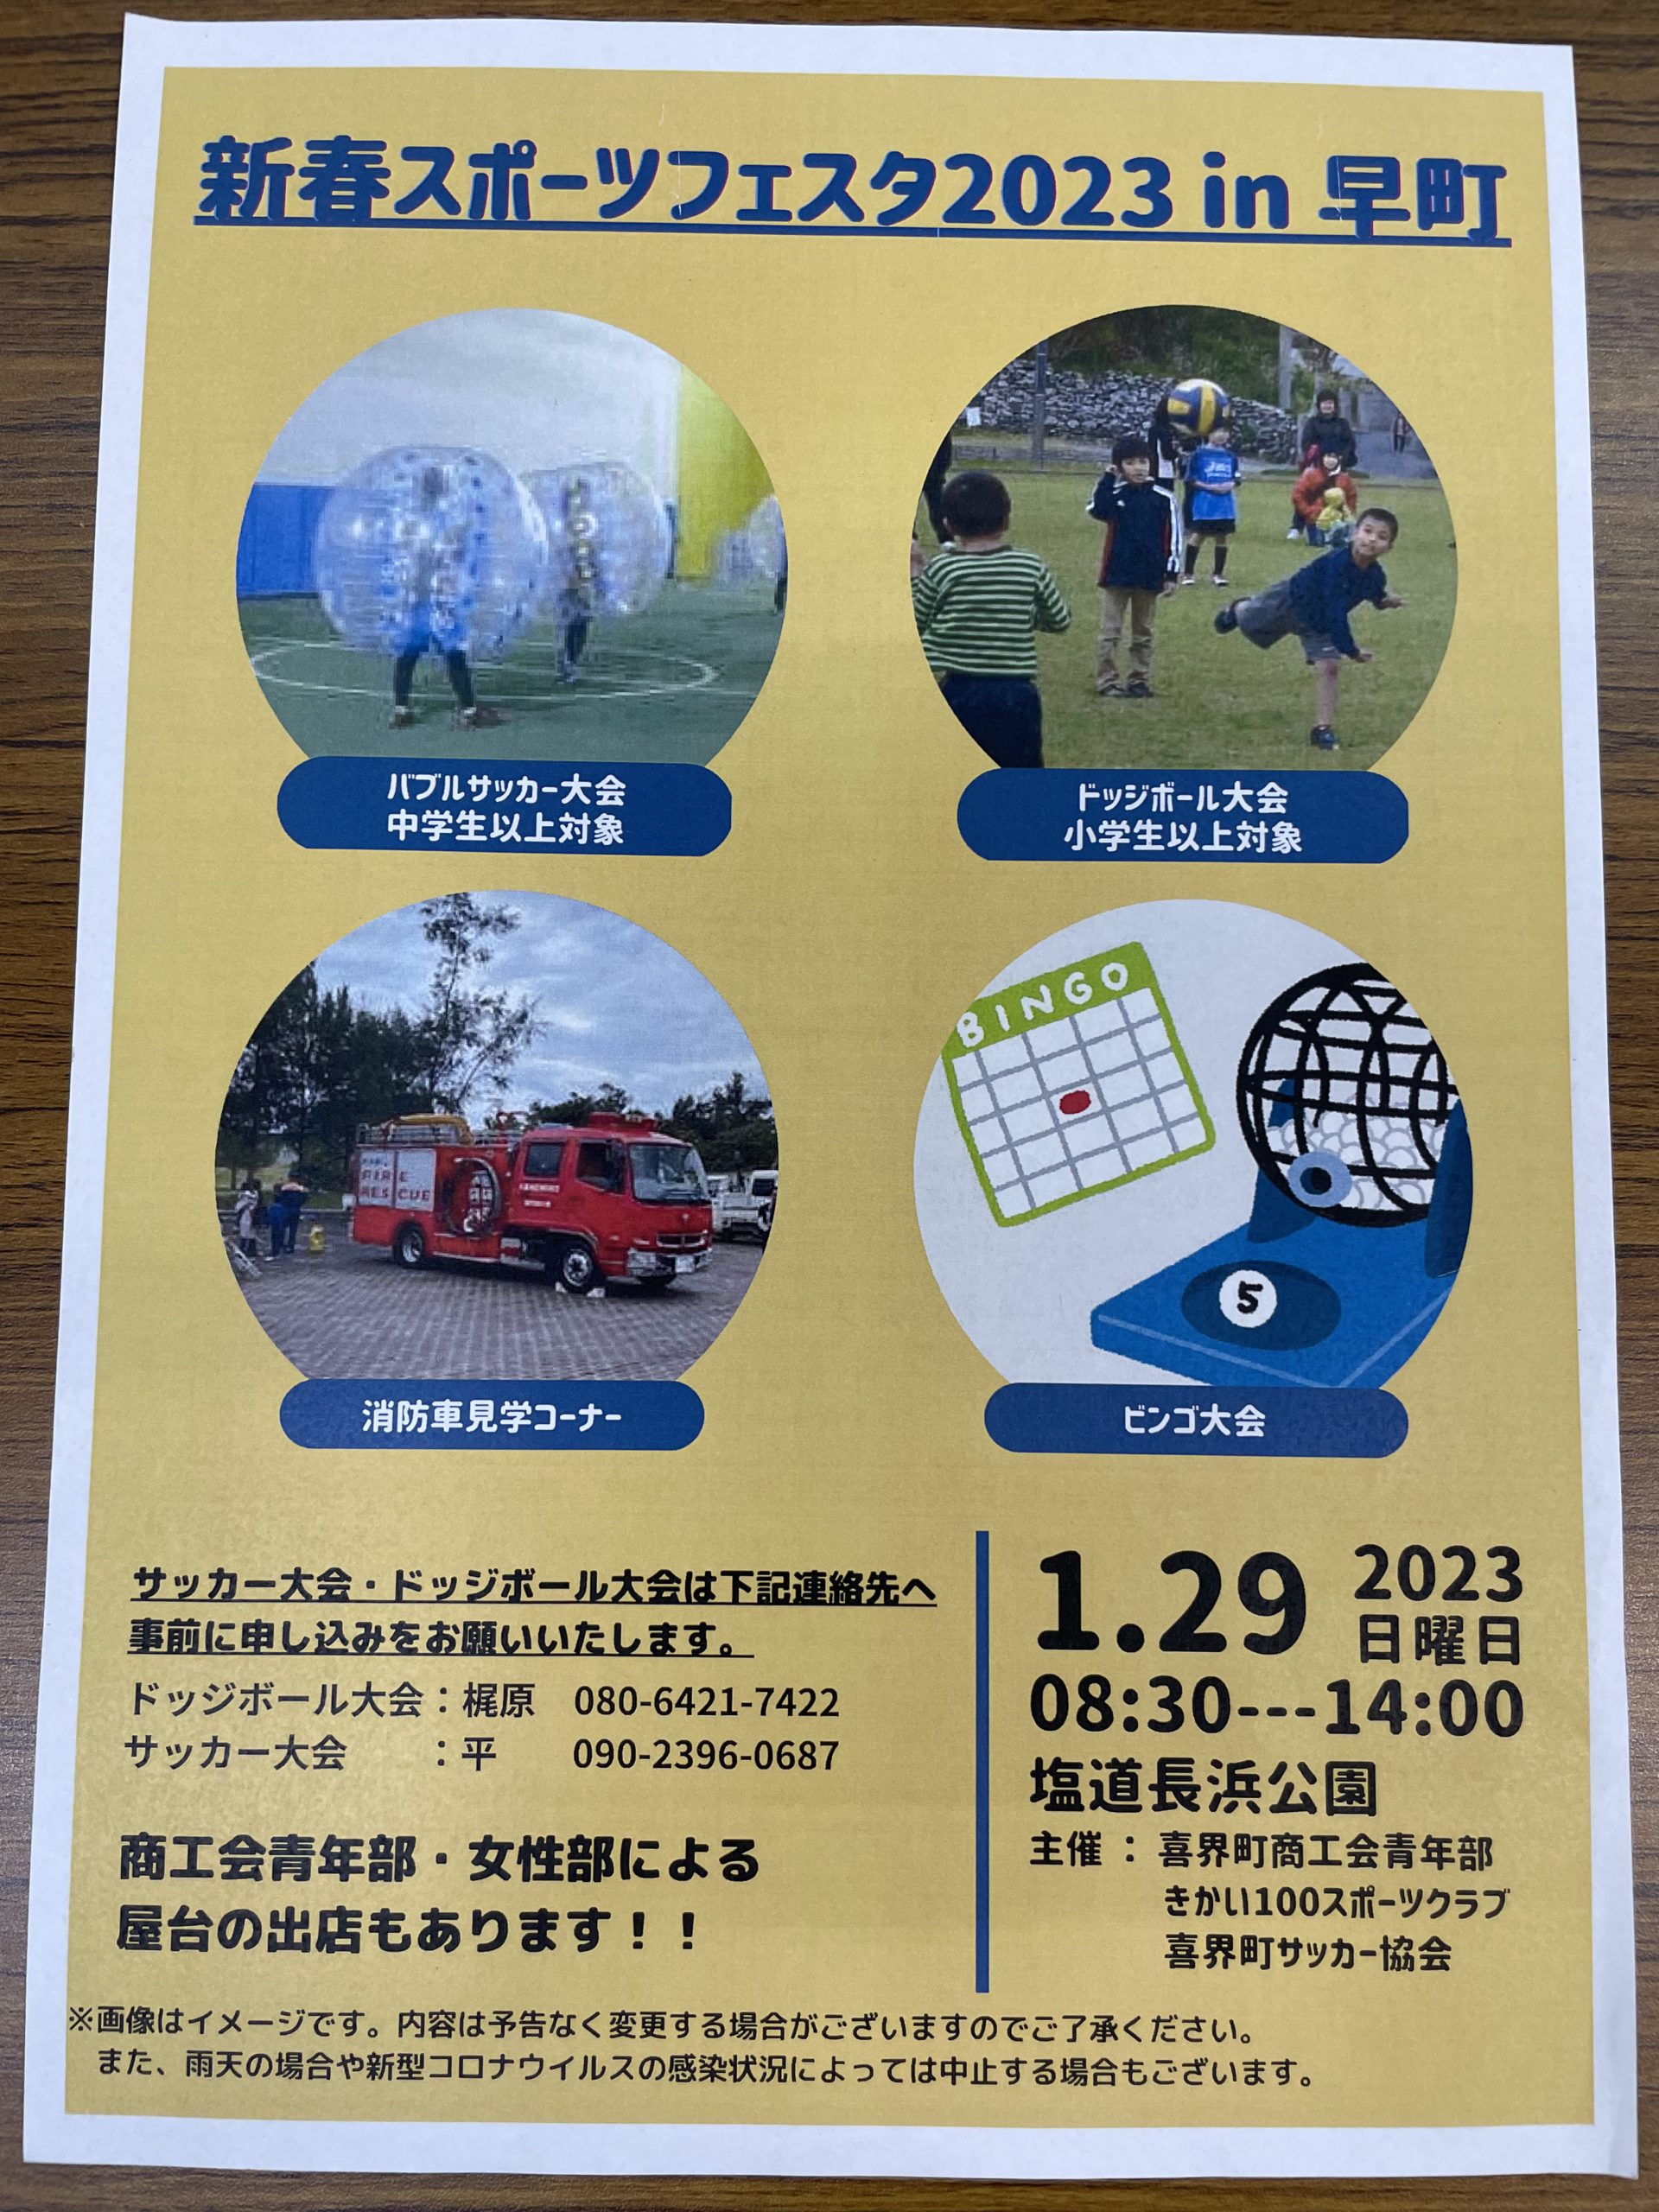 新春スポーツフェスタ2023 in 早町